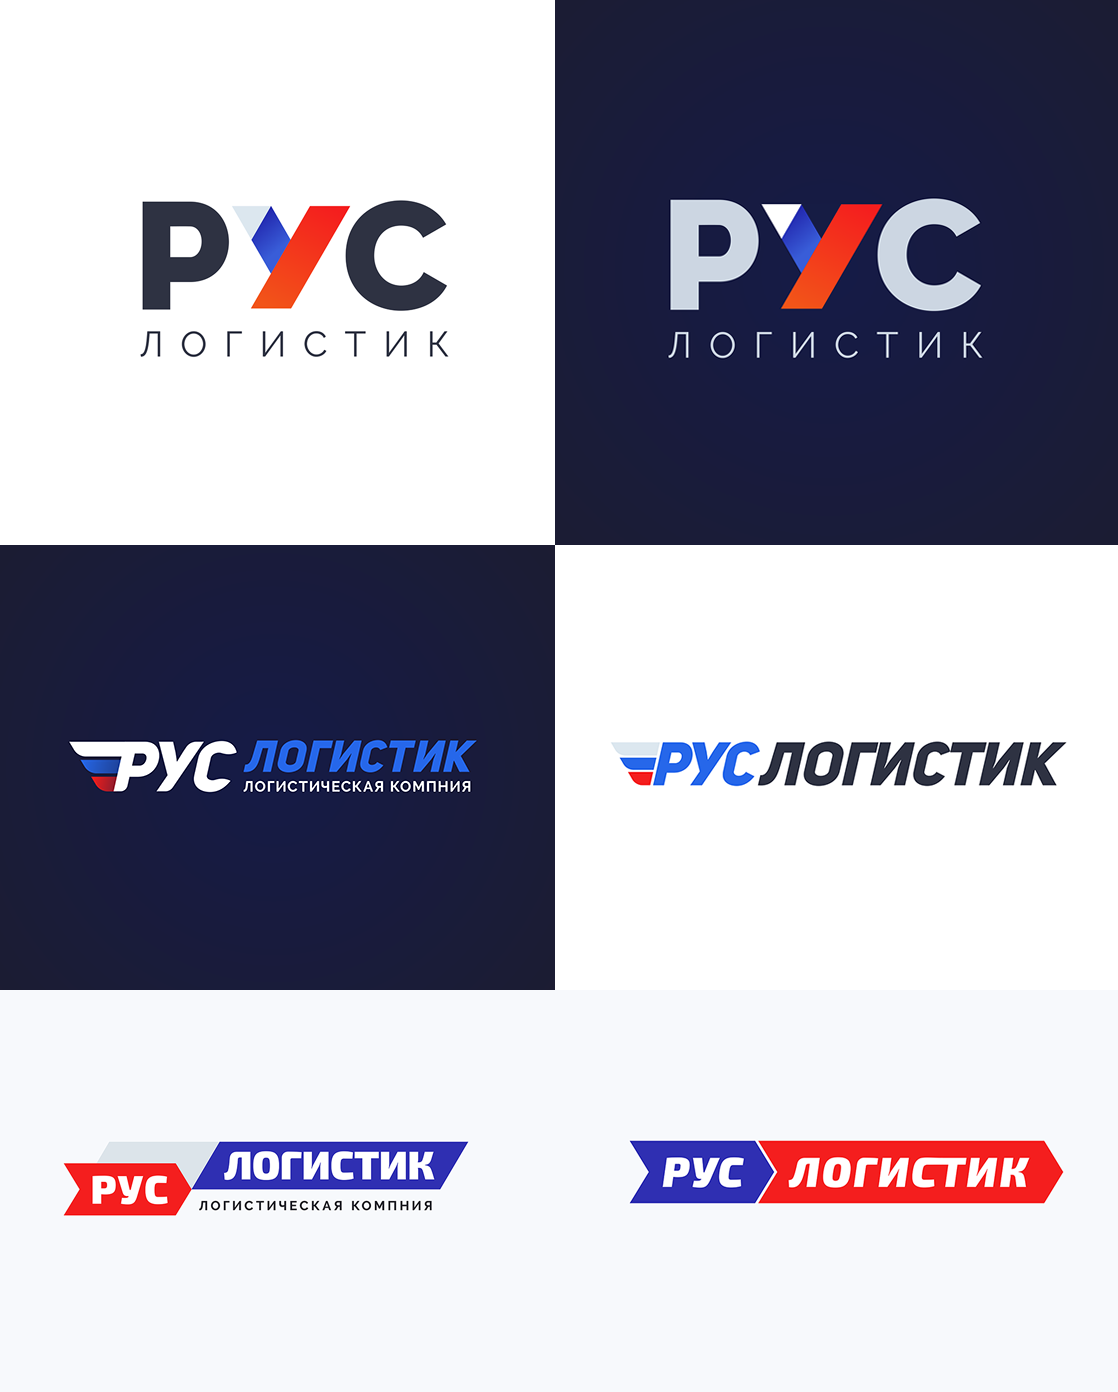 "РУСЛОГИСТИК" - логотип транспортной компании